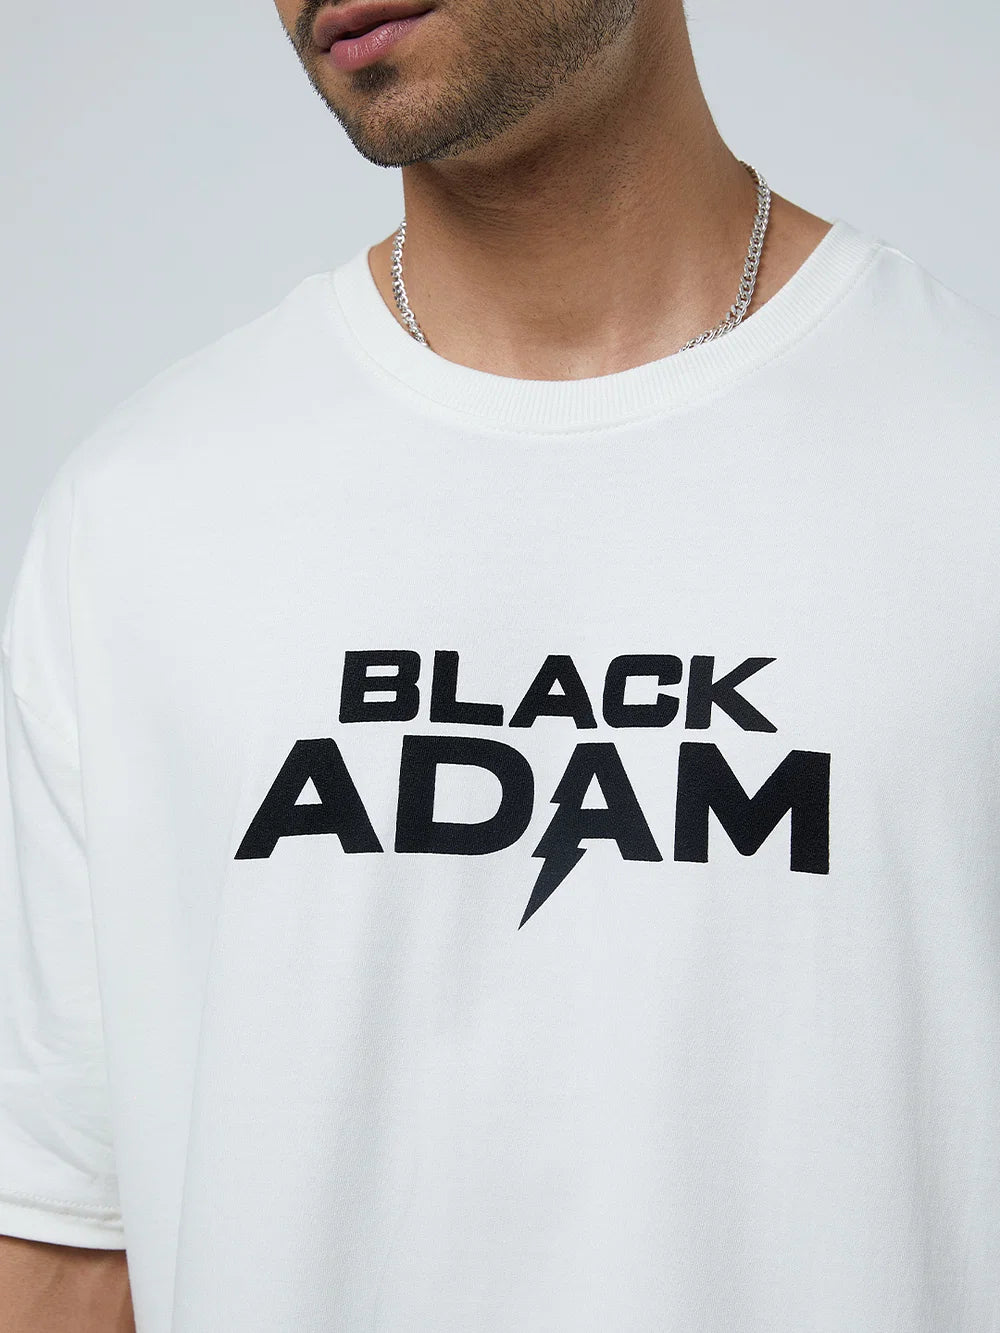 Black Adam Legend (UK version)